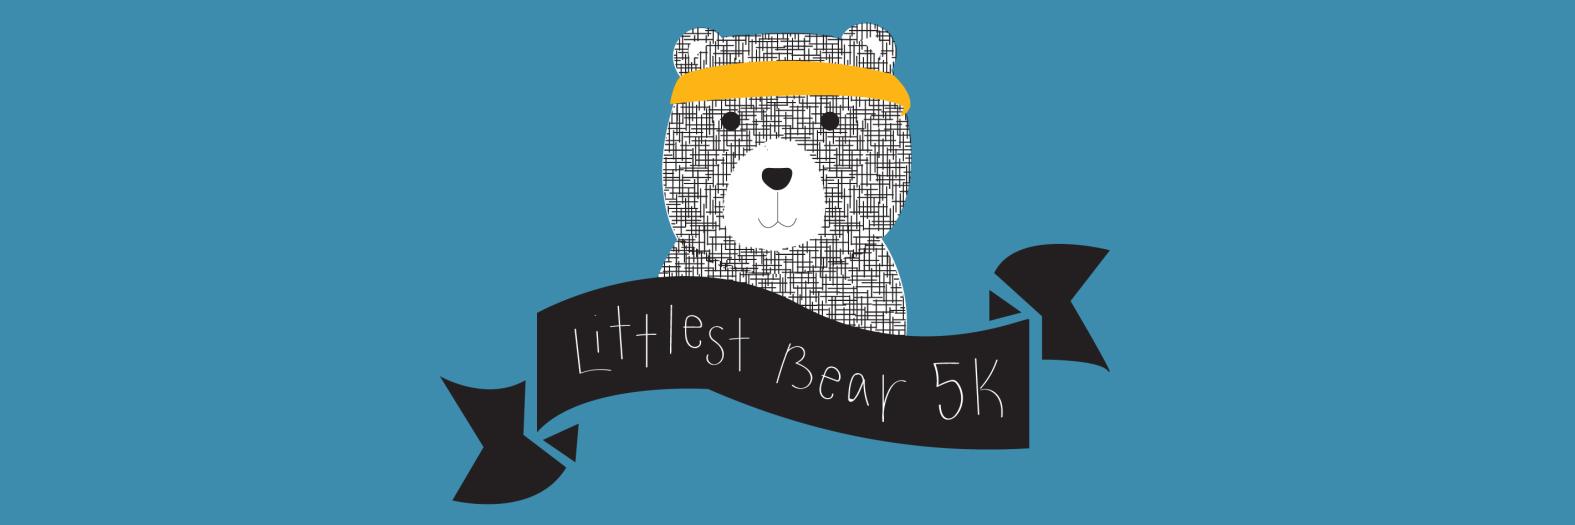 Littlest Bear 5k banner